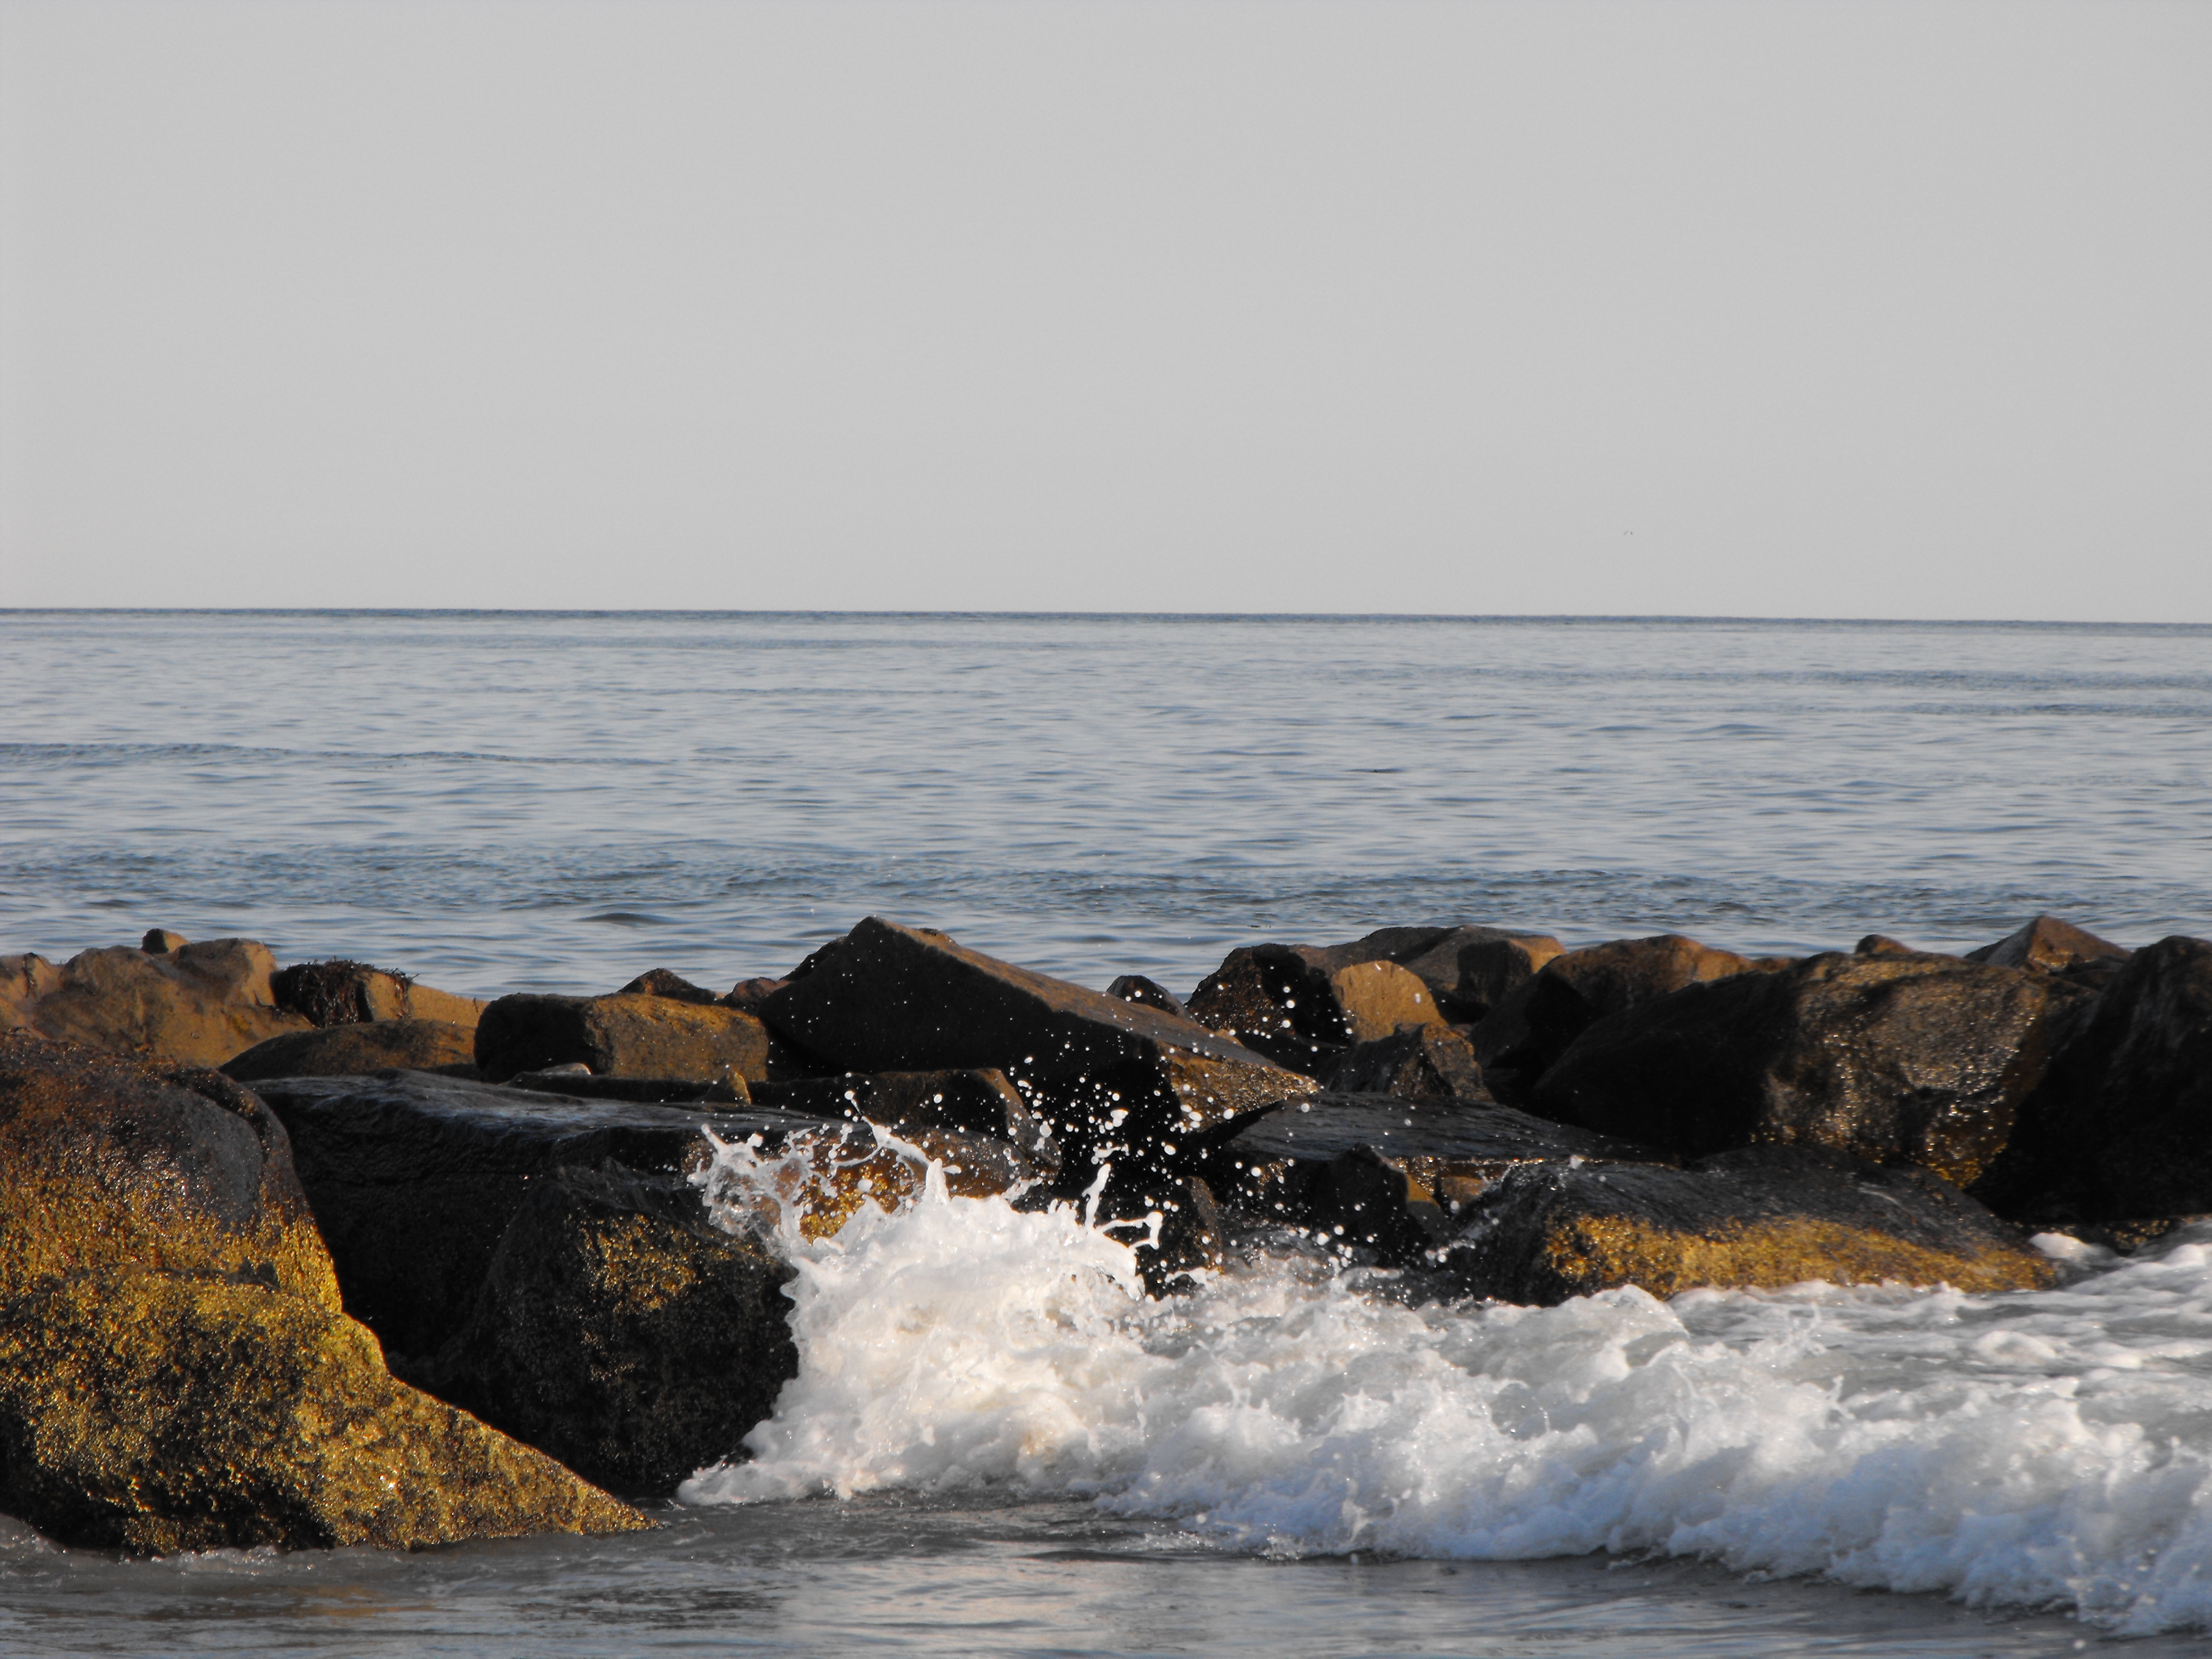 File:Narragansett Bay surf on the rocks.jpg - Wikimedia Commons